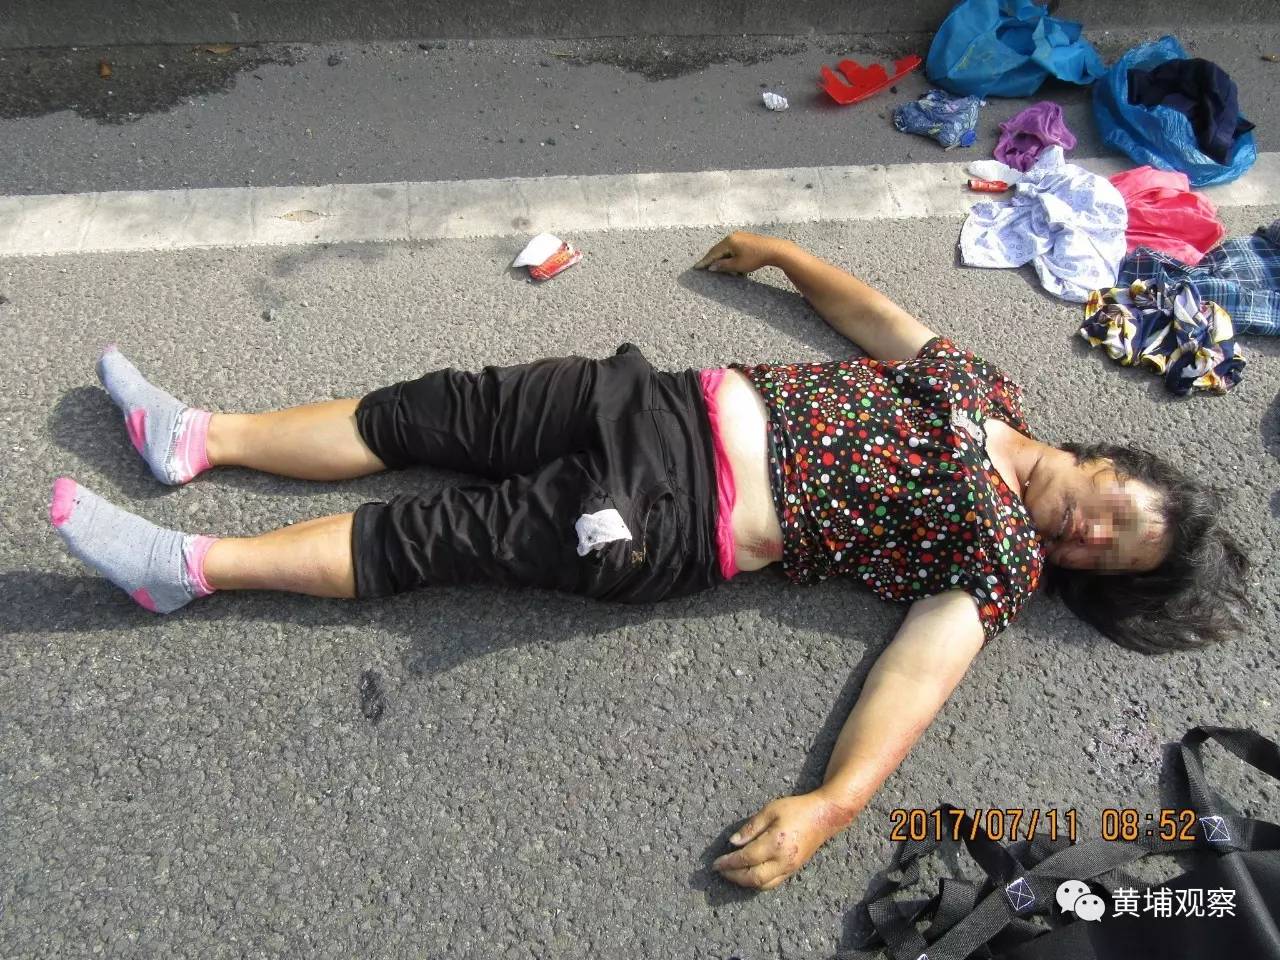 50岁女子一周前被撞身亡,黄埔警方呼吁家属